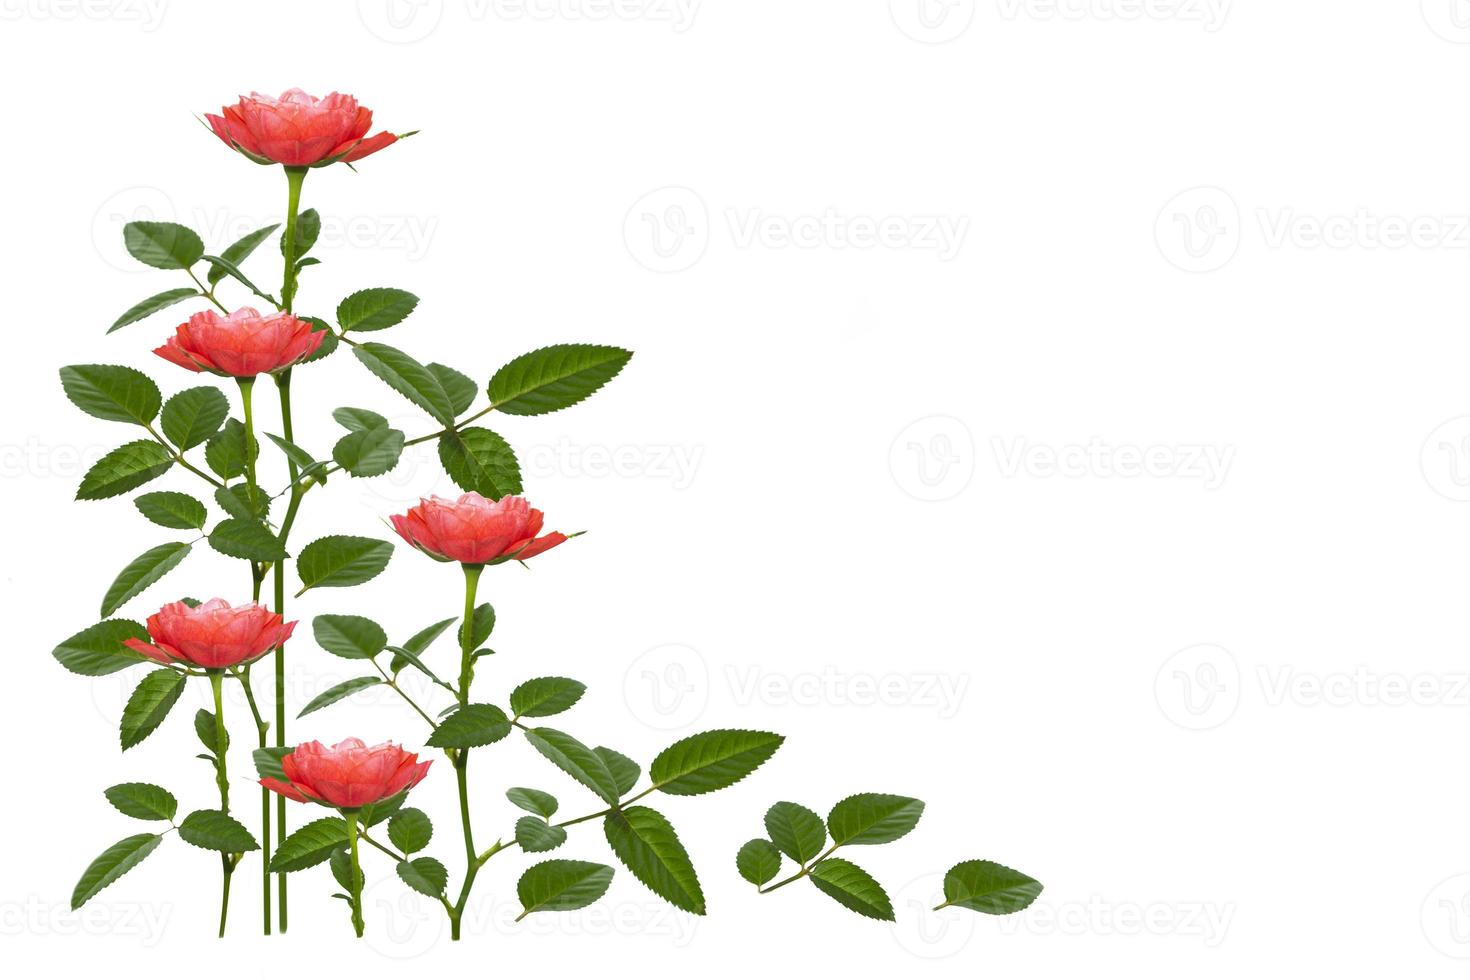 vijf rode rozen op een witte achtergrond. bloemen achtergrond foto